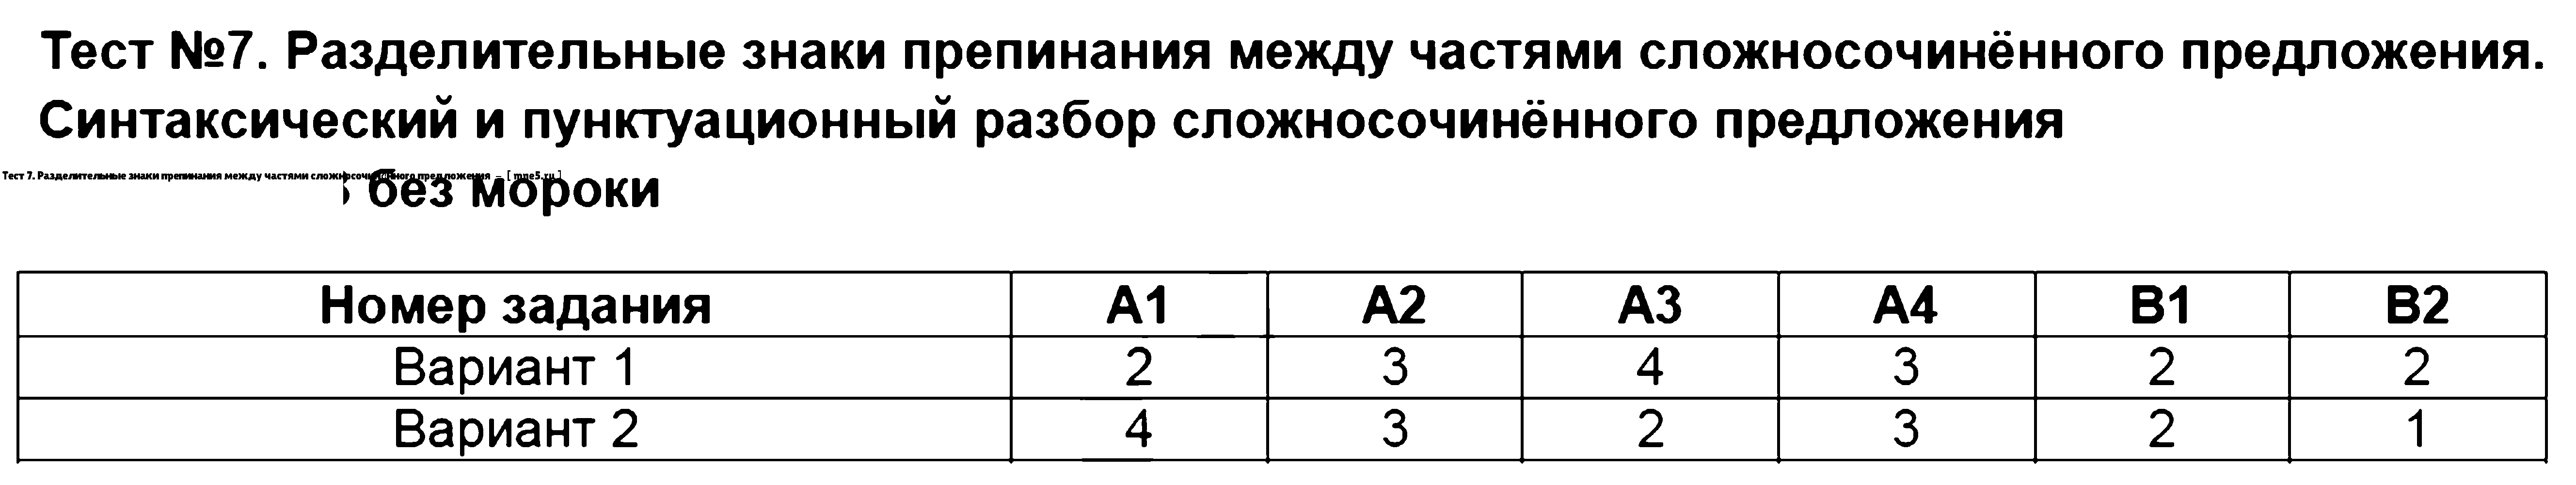 ГДЗ Русский язык 9 класс - Тест 7. Разделительные знаки препинания между частями сложносочинённого предложения